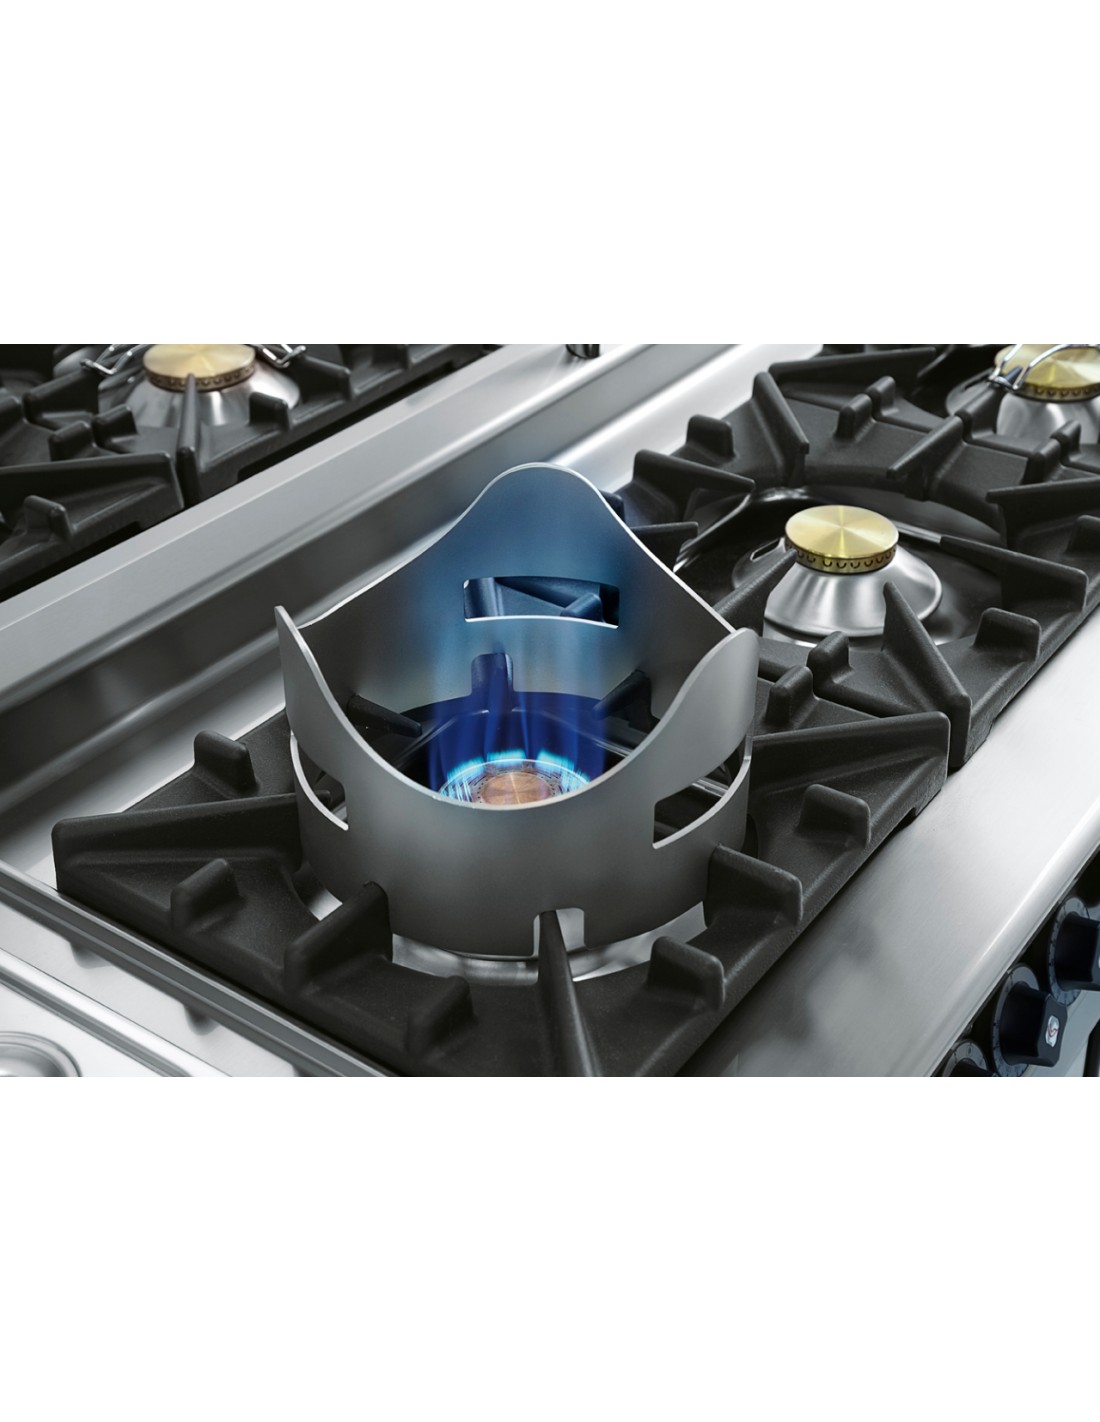 Kit wok - Fiamma Verticale - Solo su bruciatore da 10 kW e griglie in ghisa  - Dimensioni cm